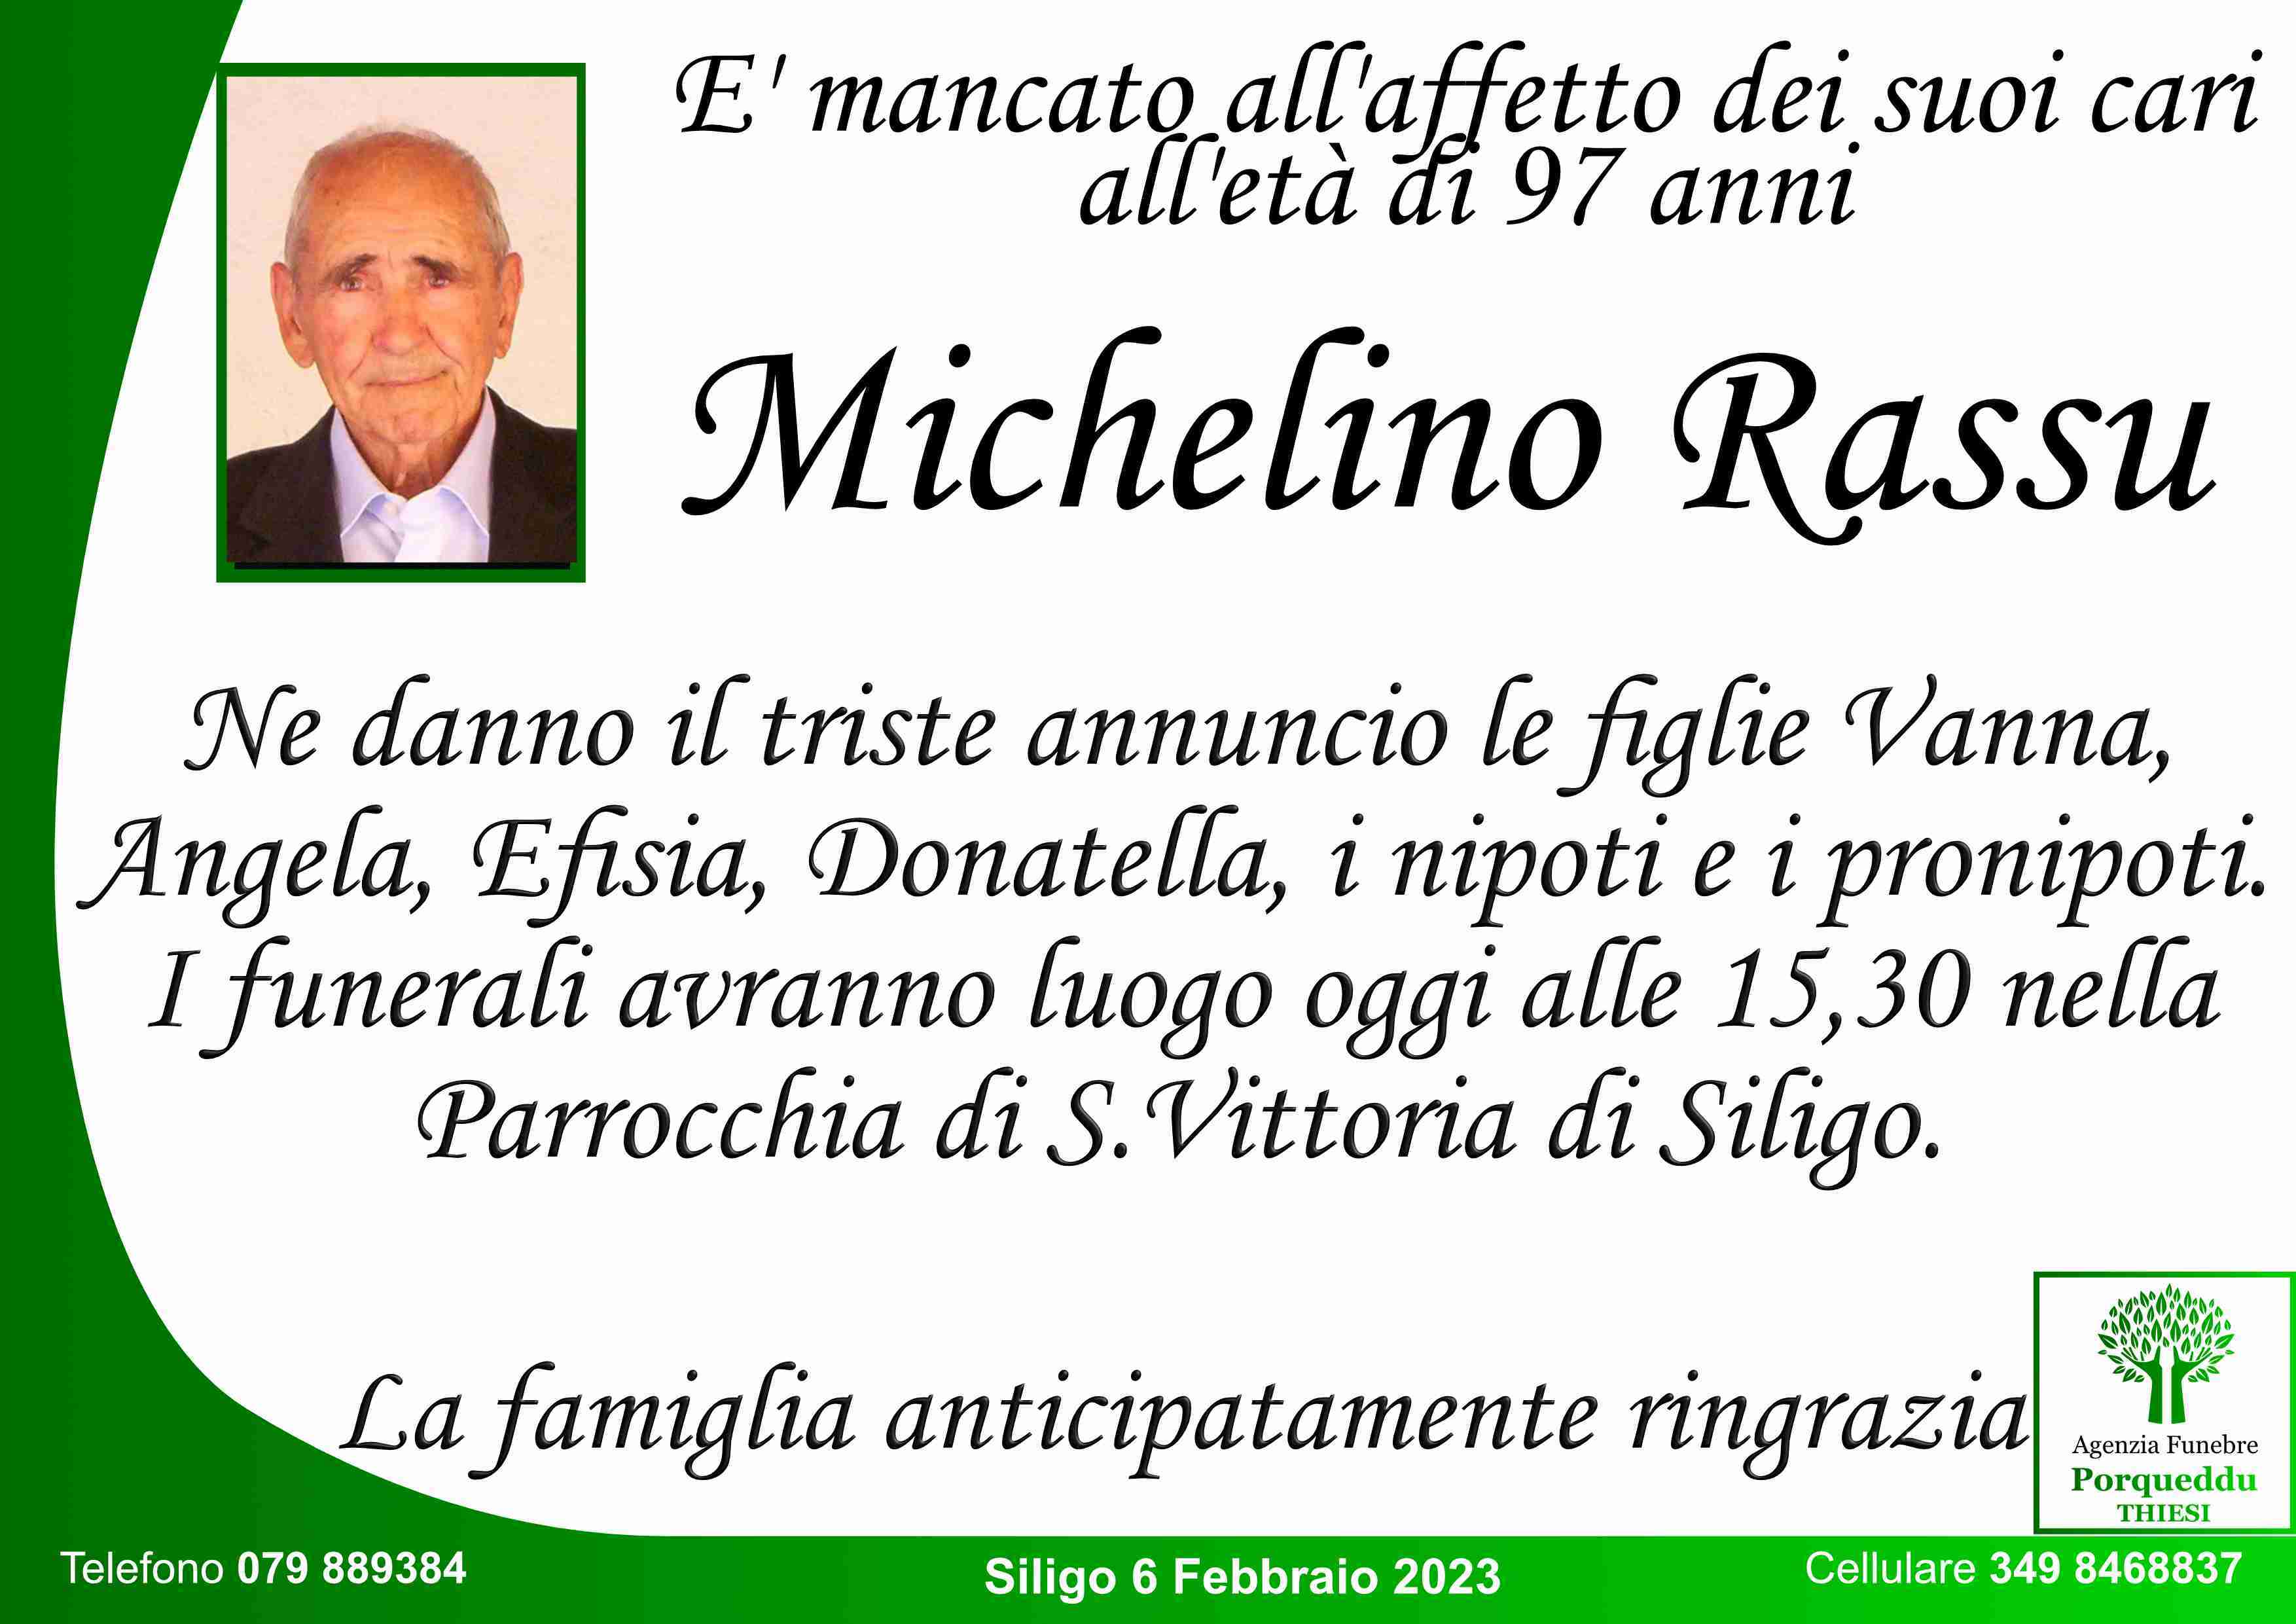 Michelino Rassu